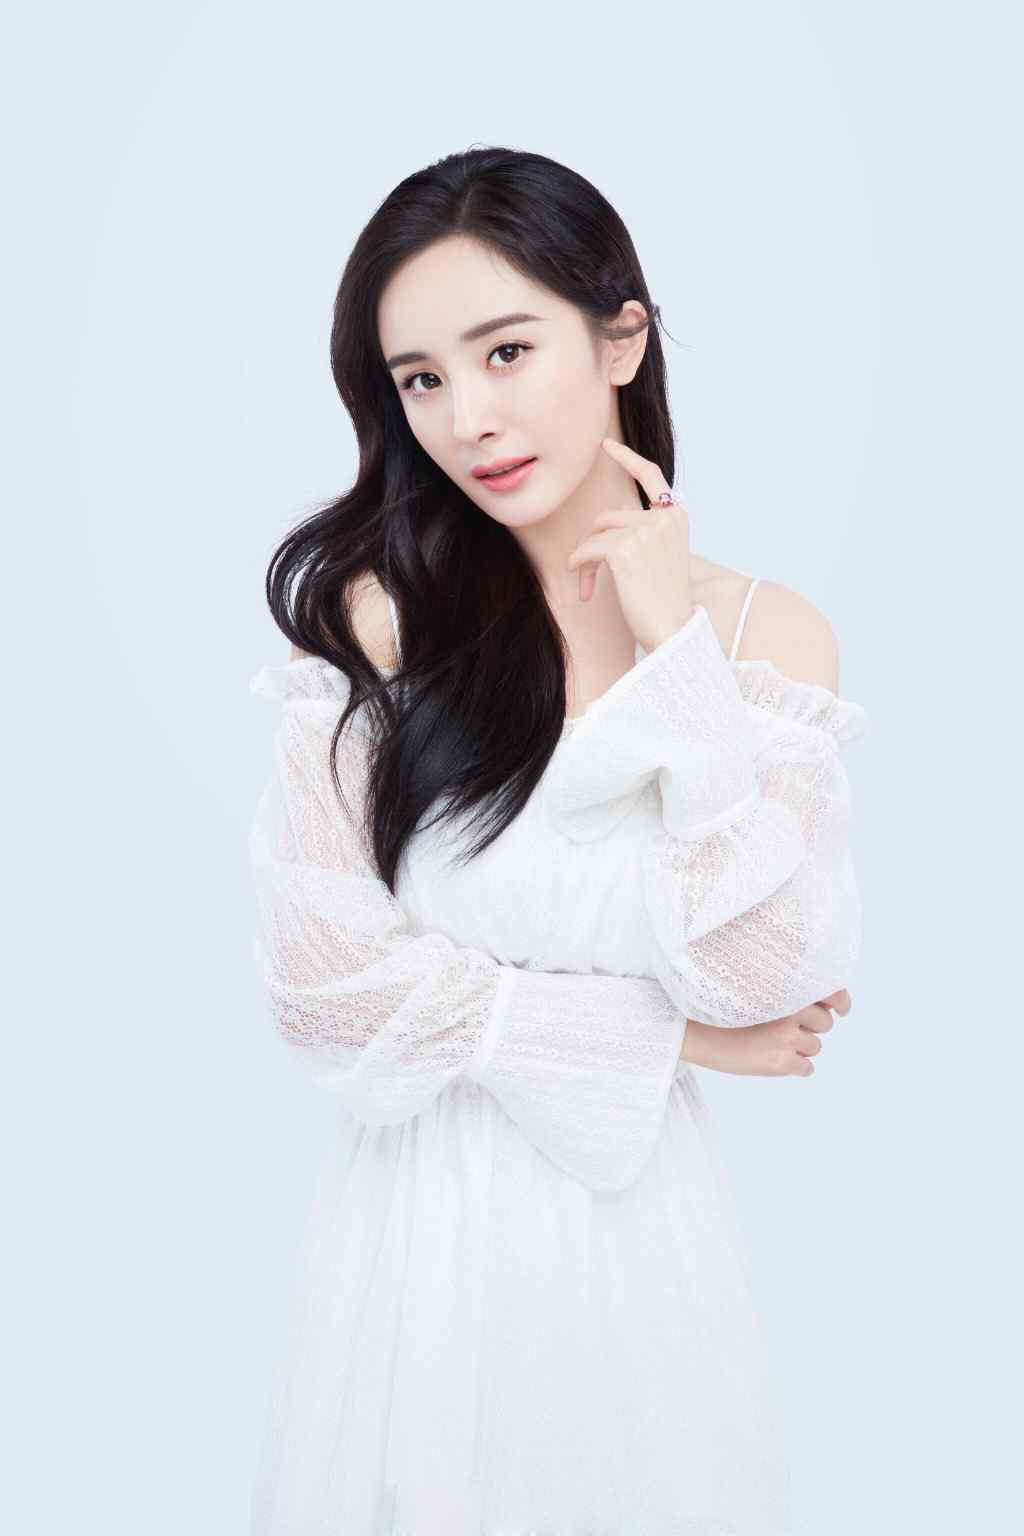 女星都在穿白色仙气连衣裙 - NUYOU SINGAPORE《女友》 - 最时尚中文杂志